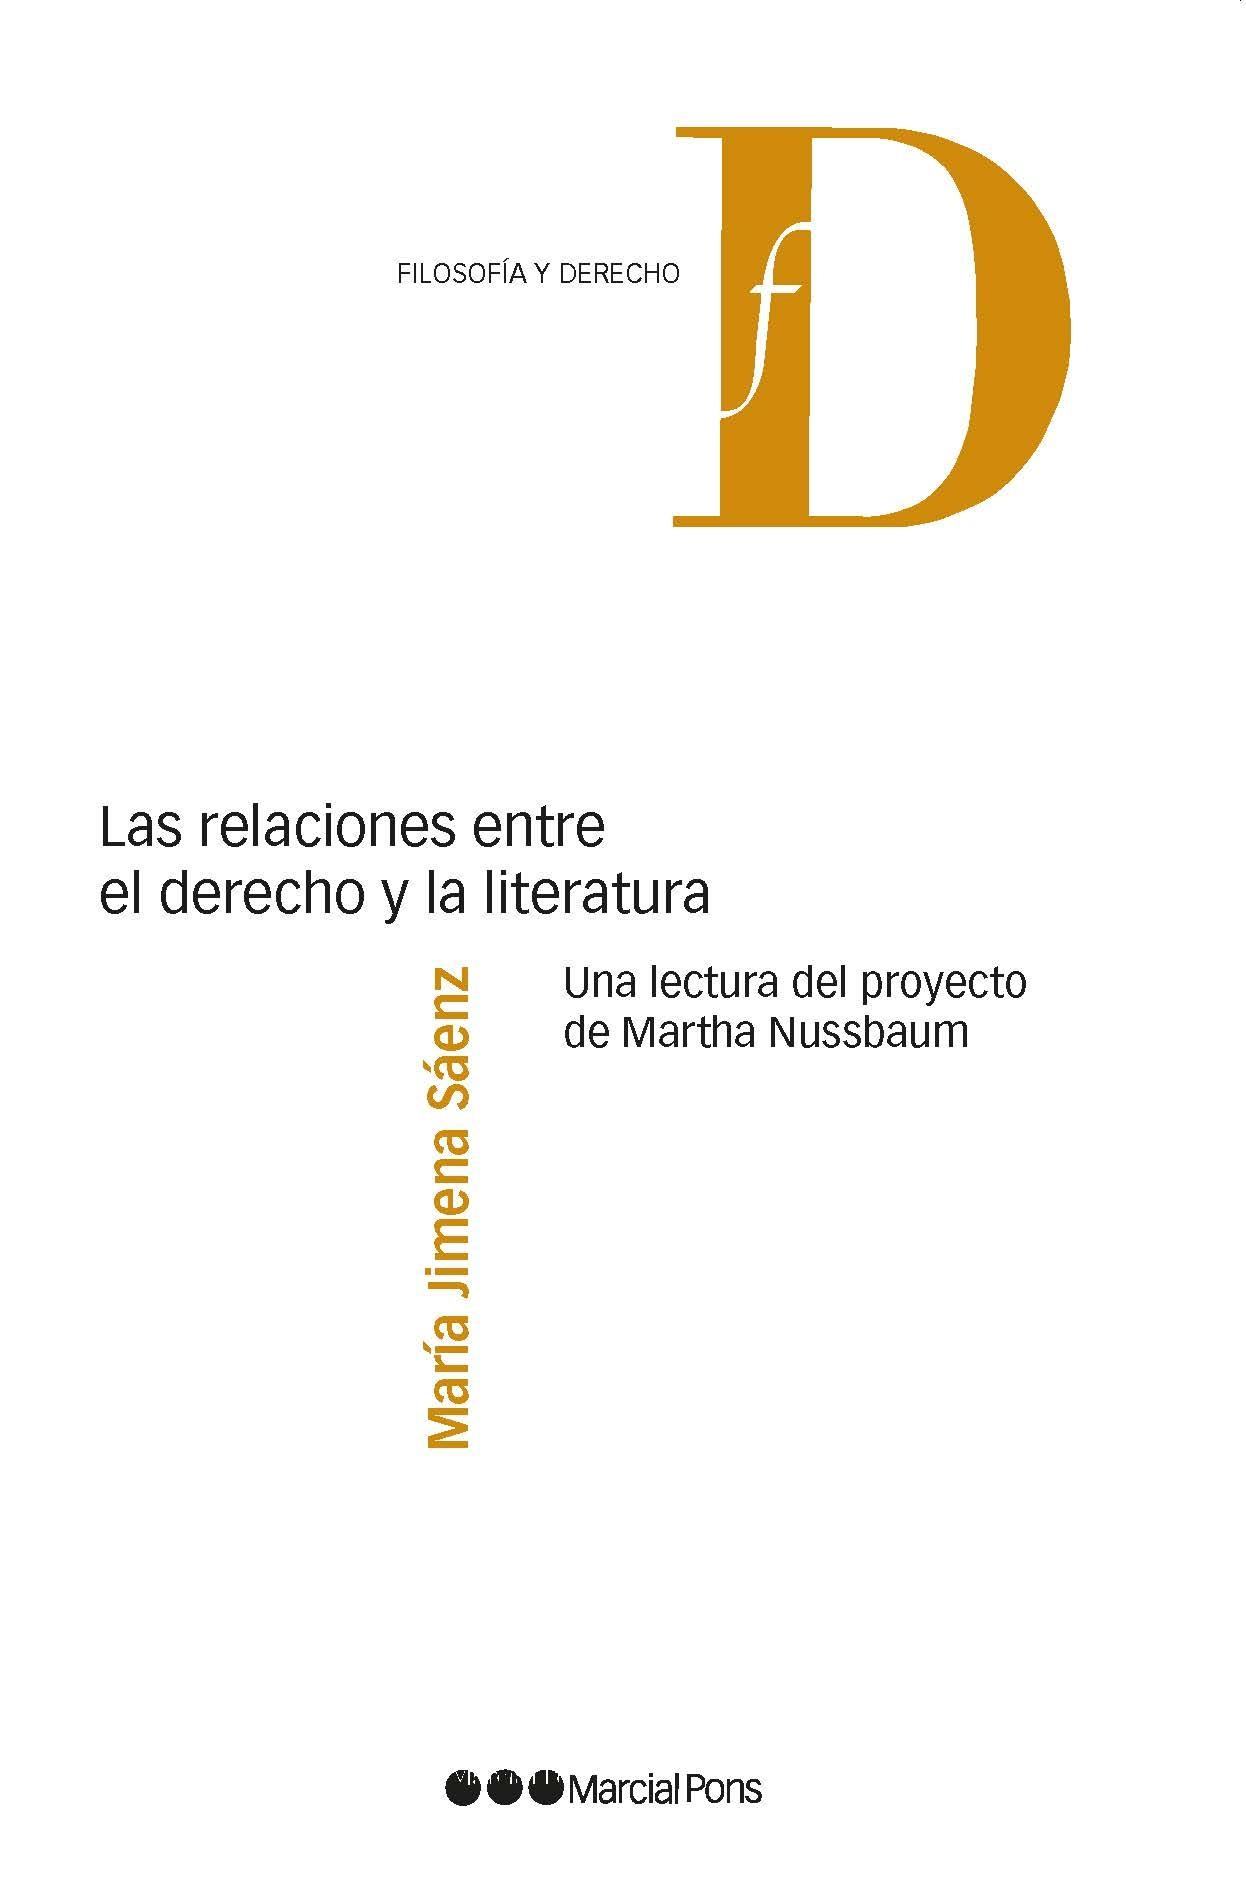 Las relaciones entre el derecho y la literatura "Una lectura del proyecto de Martha Nussbaum"